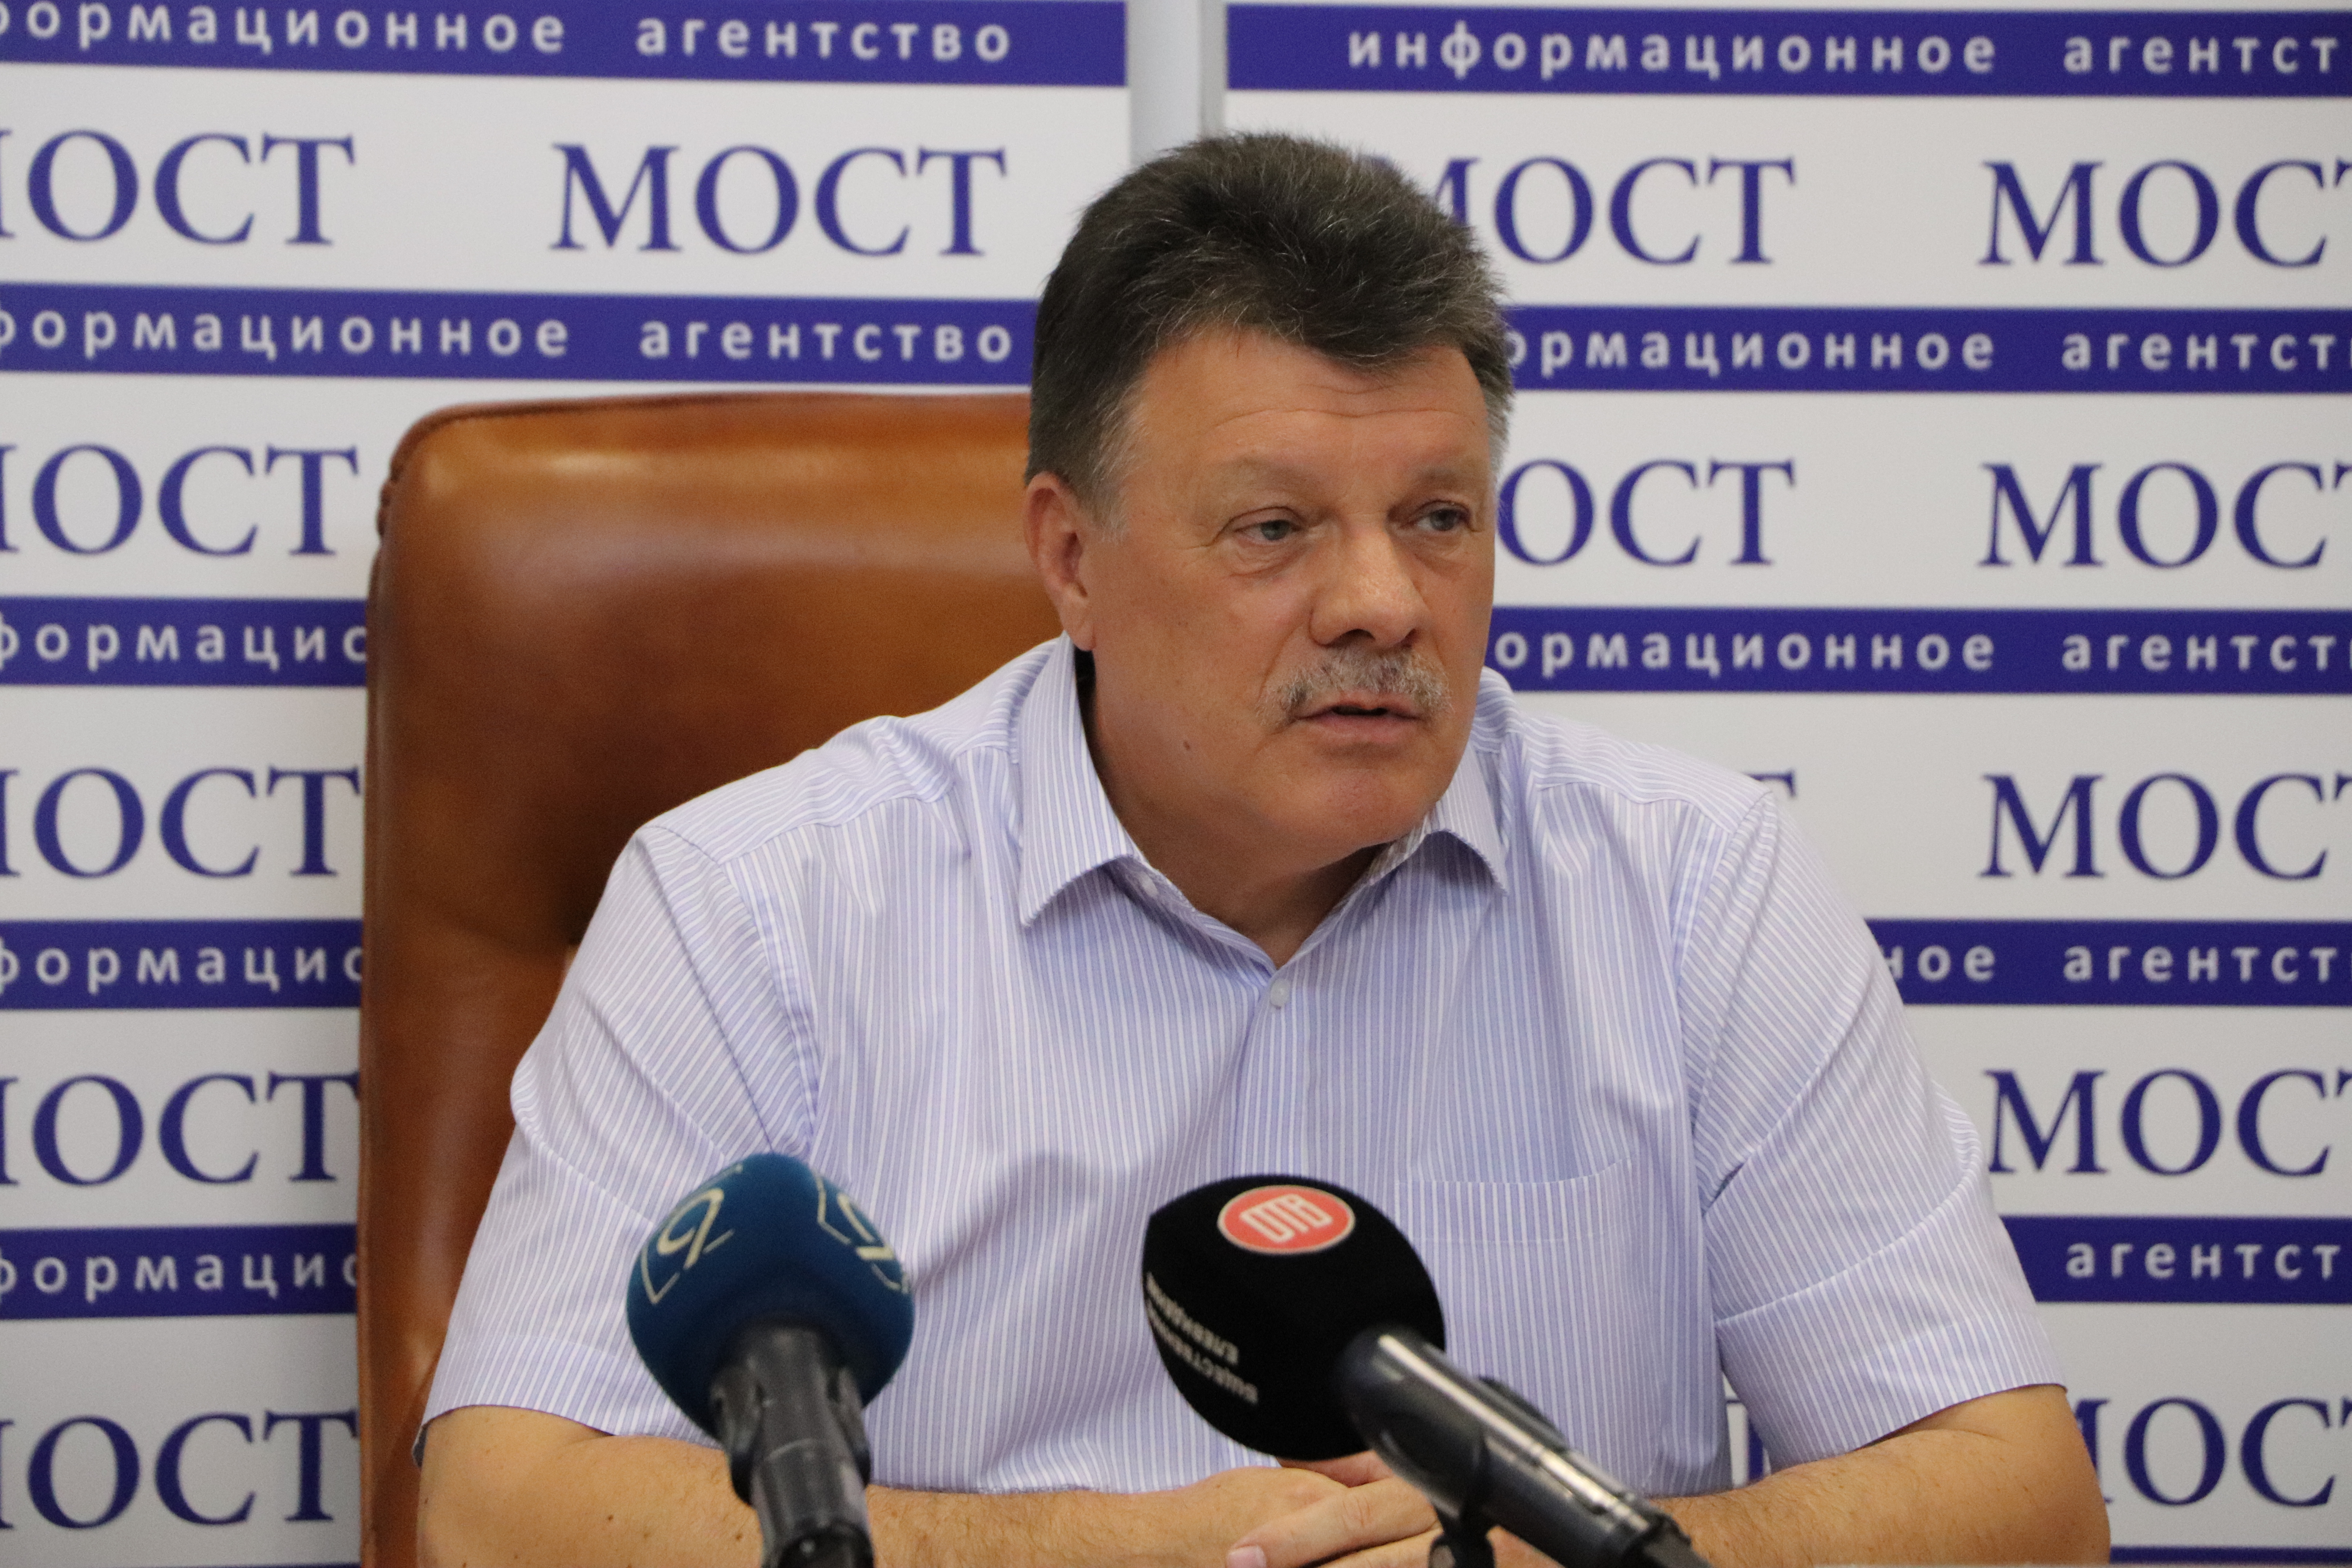 Лица, управляющие электросамокатами должны законодательно признаваться водителями, - директор Днепропетровского НИЭКЦ